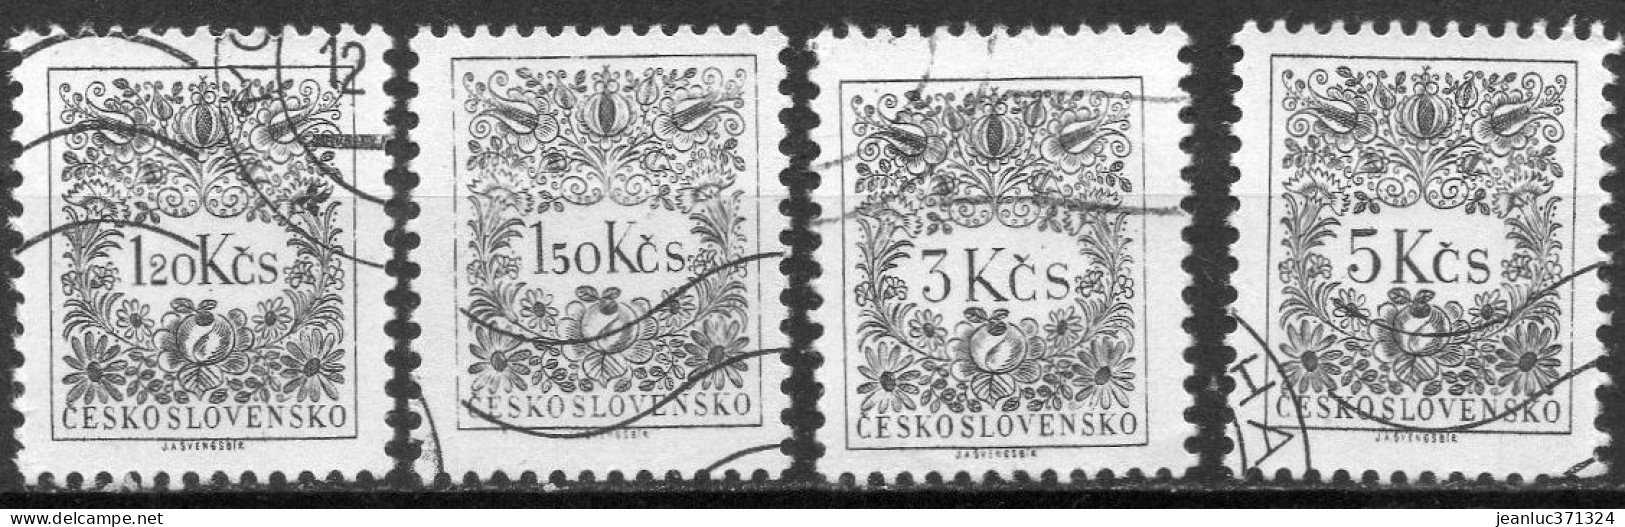 TCHECOSLOVAQUIE N° Taxe 98 à 101 O Y&T 1963 Valeur Fasciale 1.25-1.50-3-5 Kcs - Postage Due